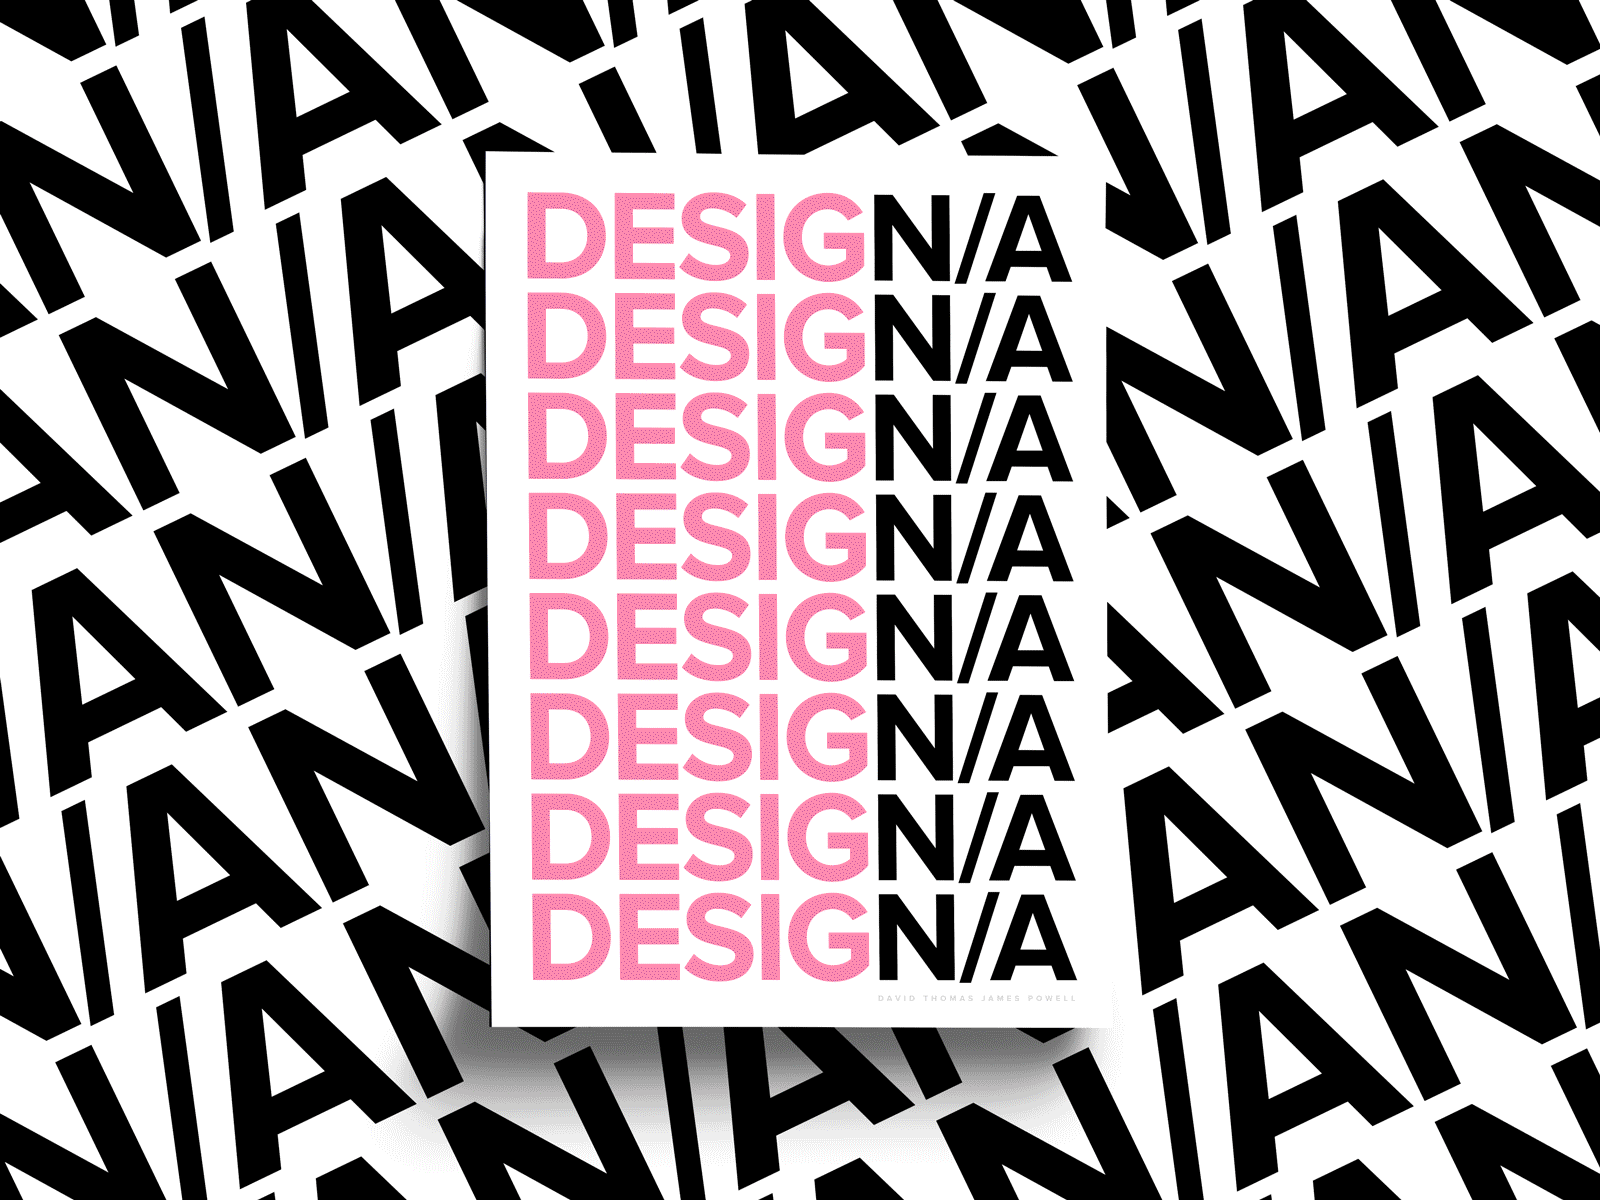 2021 Review animation app app design brand design designer gif graphic design interface portfolio product product design simple type type art typography ui ui design ux ux design